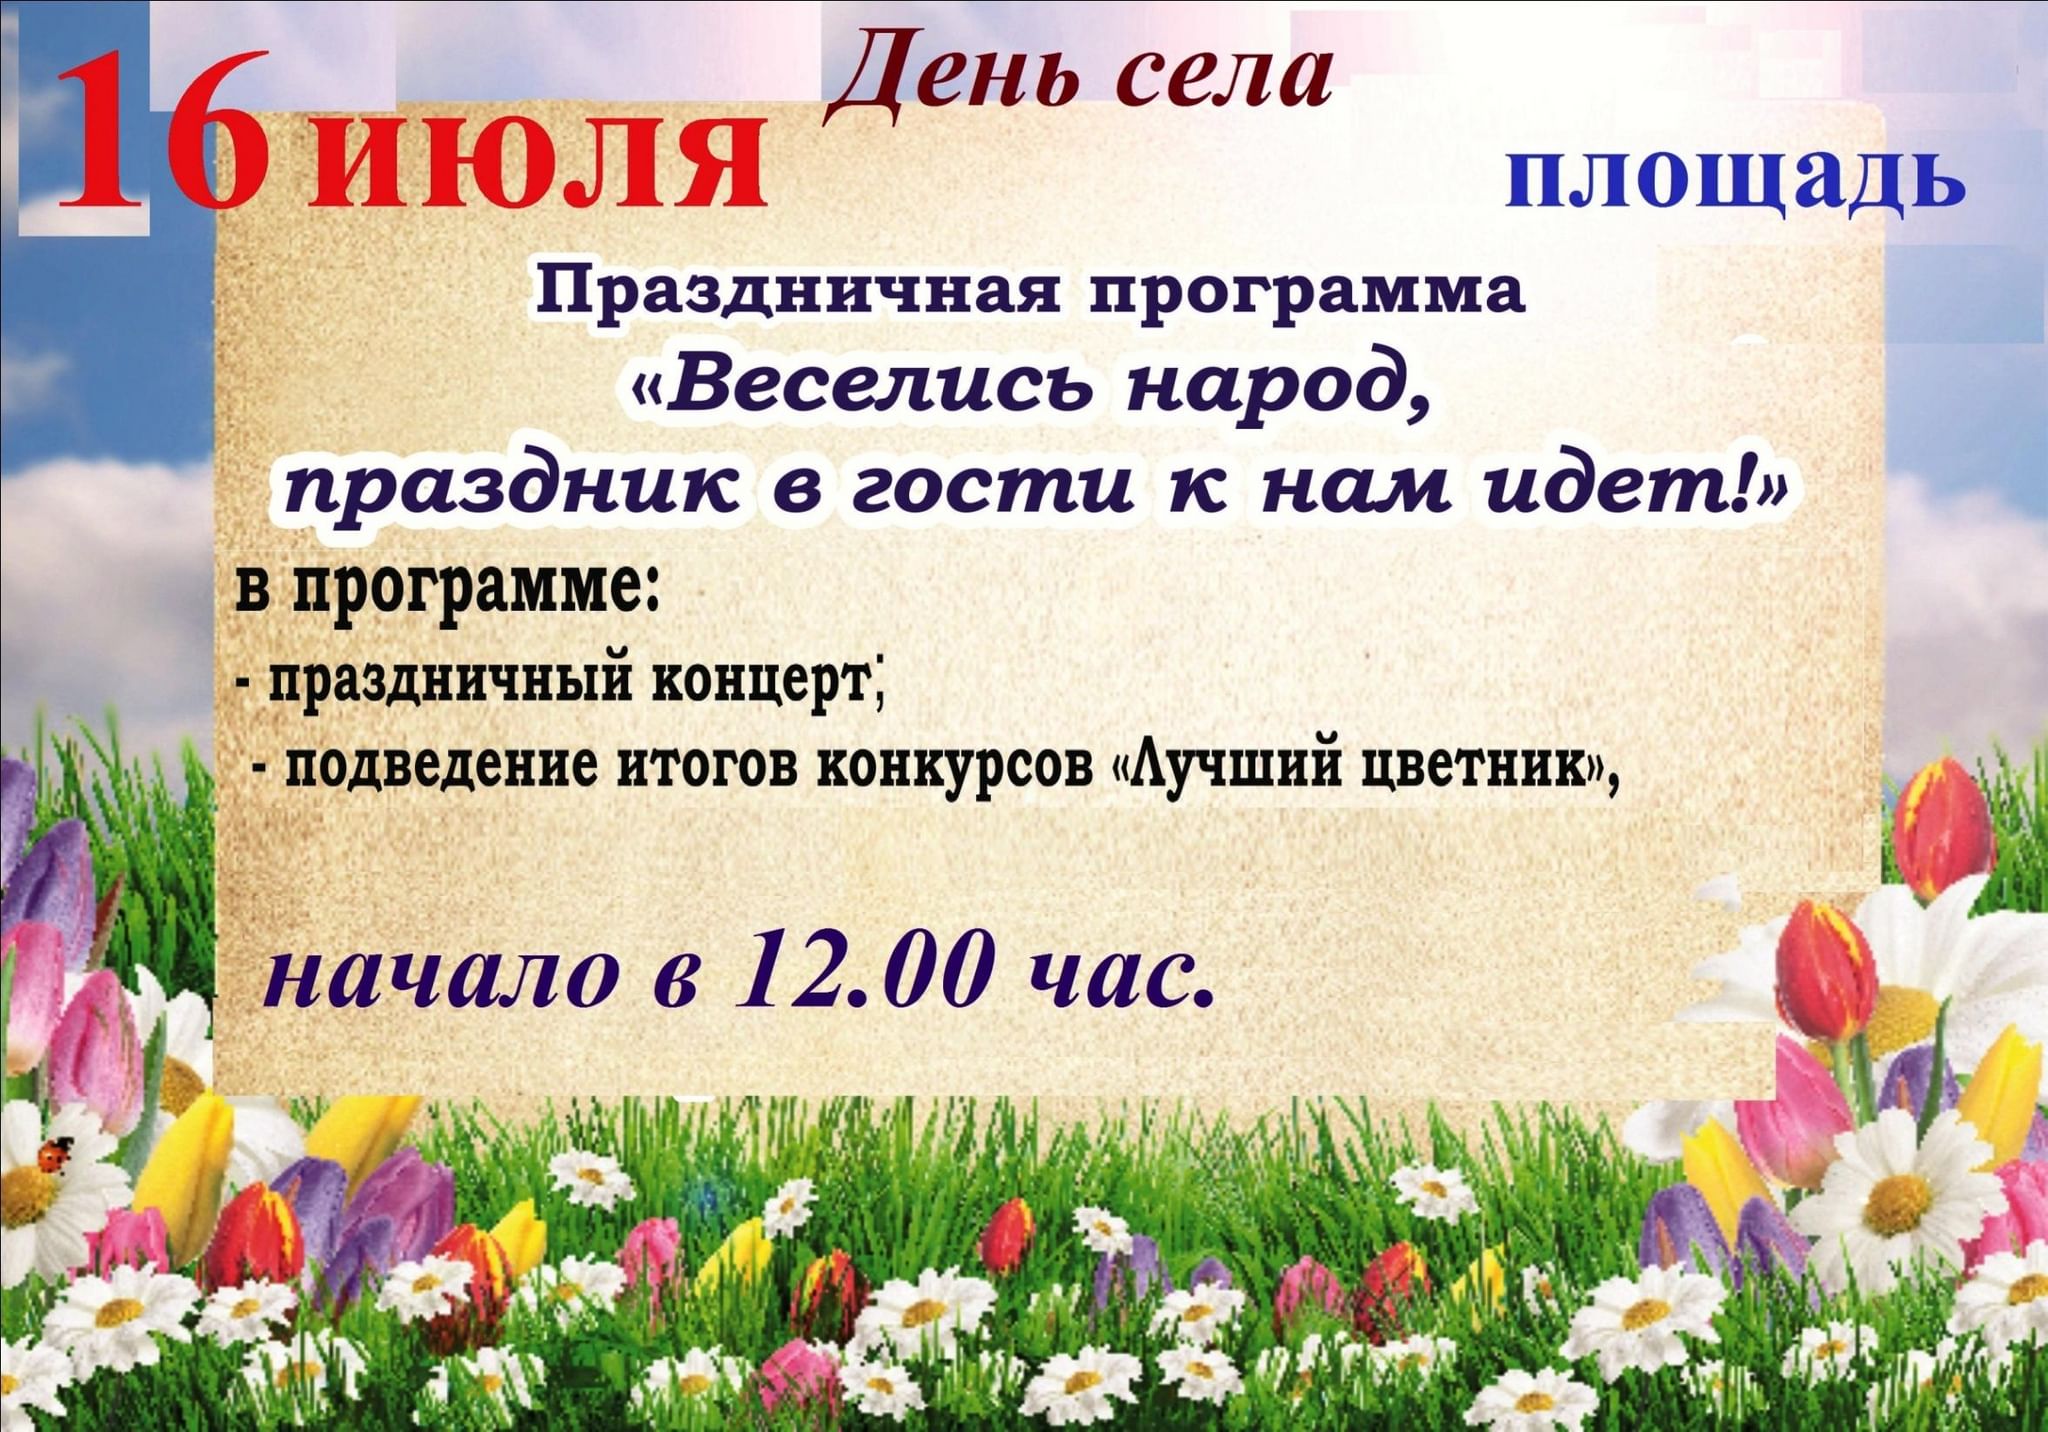 Дата проведения дня села Сканово в 2022 году